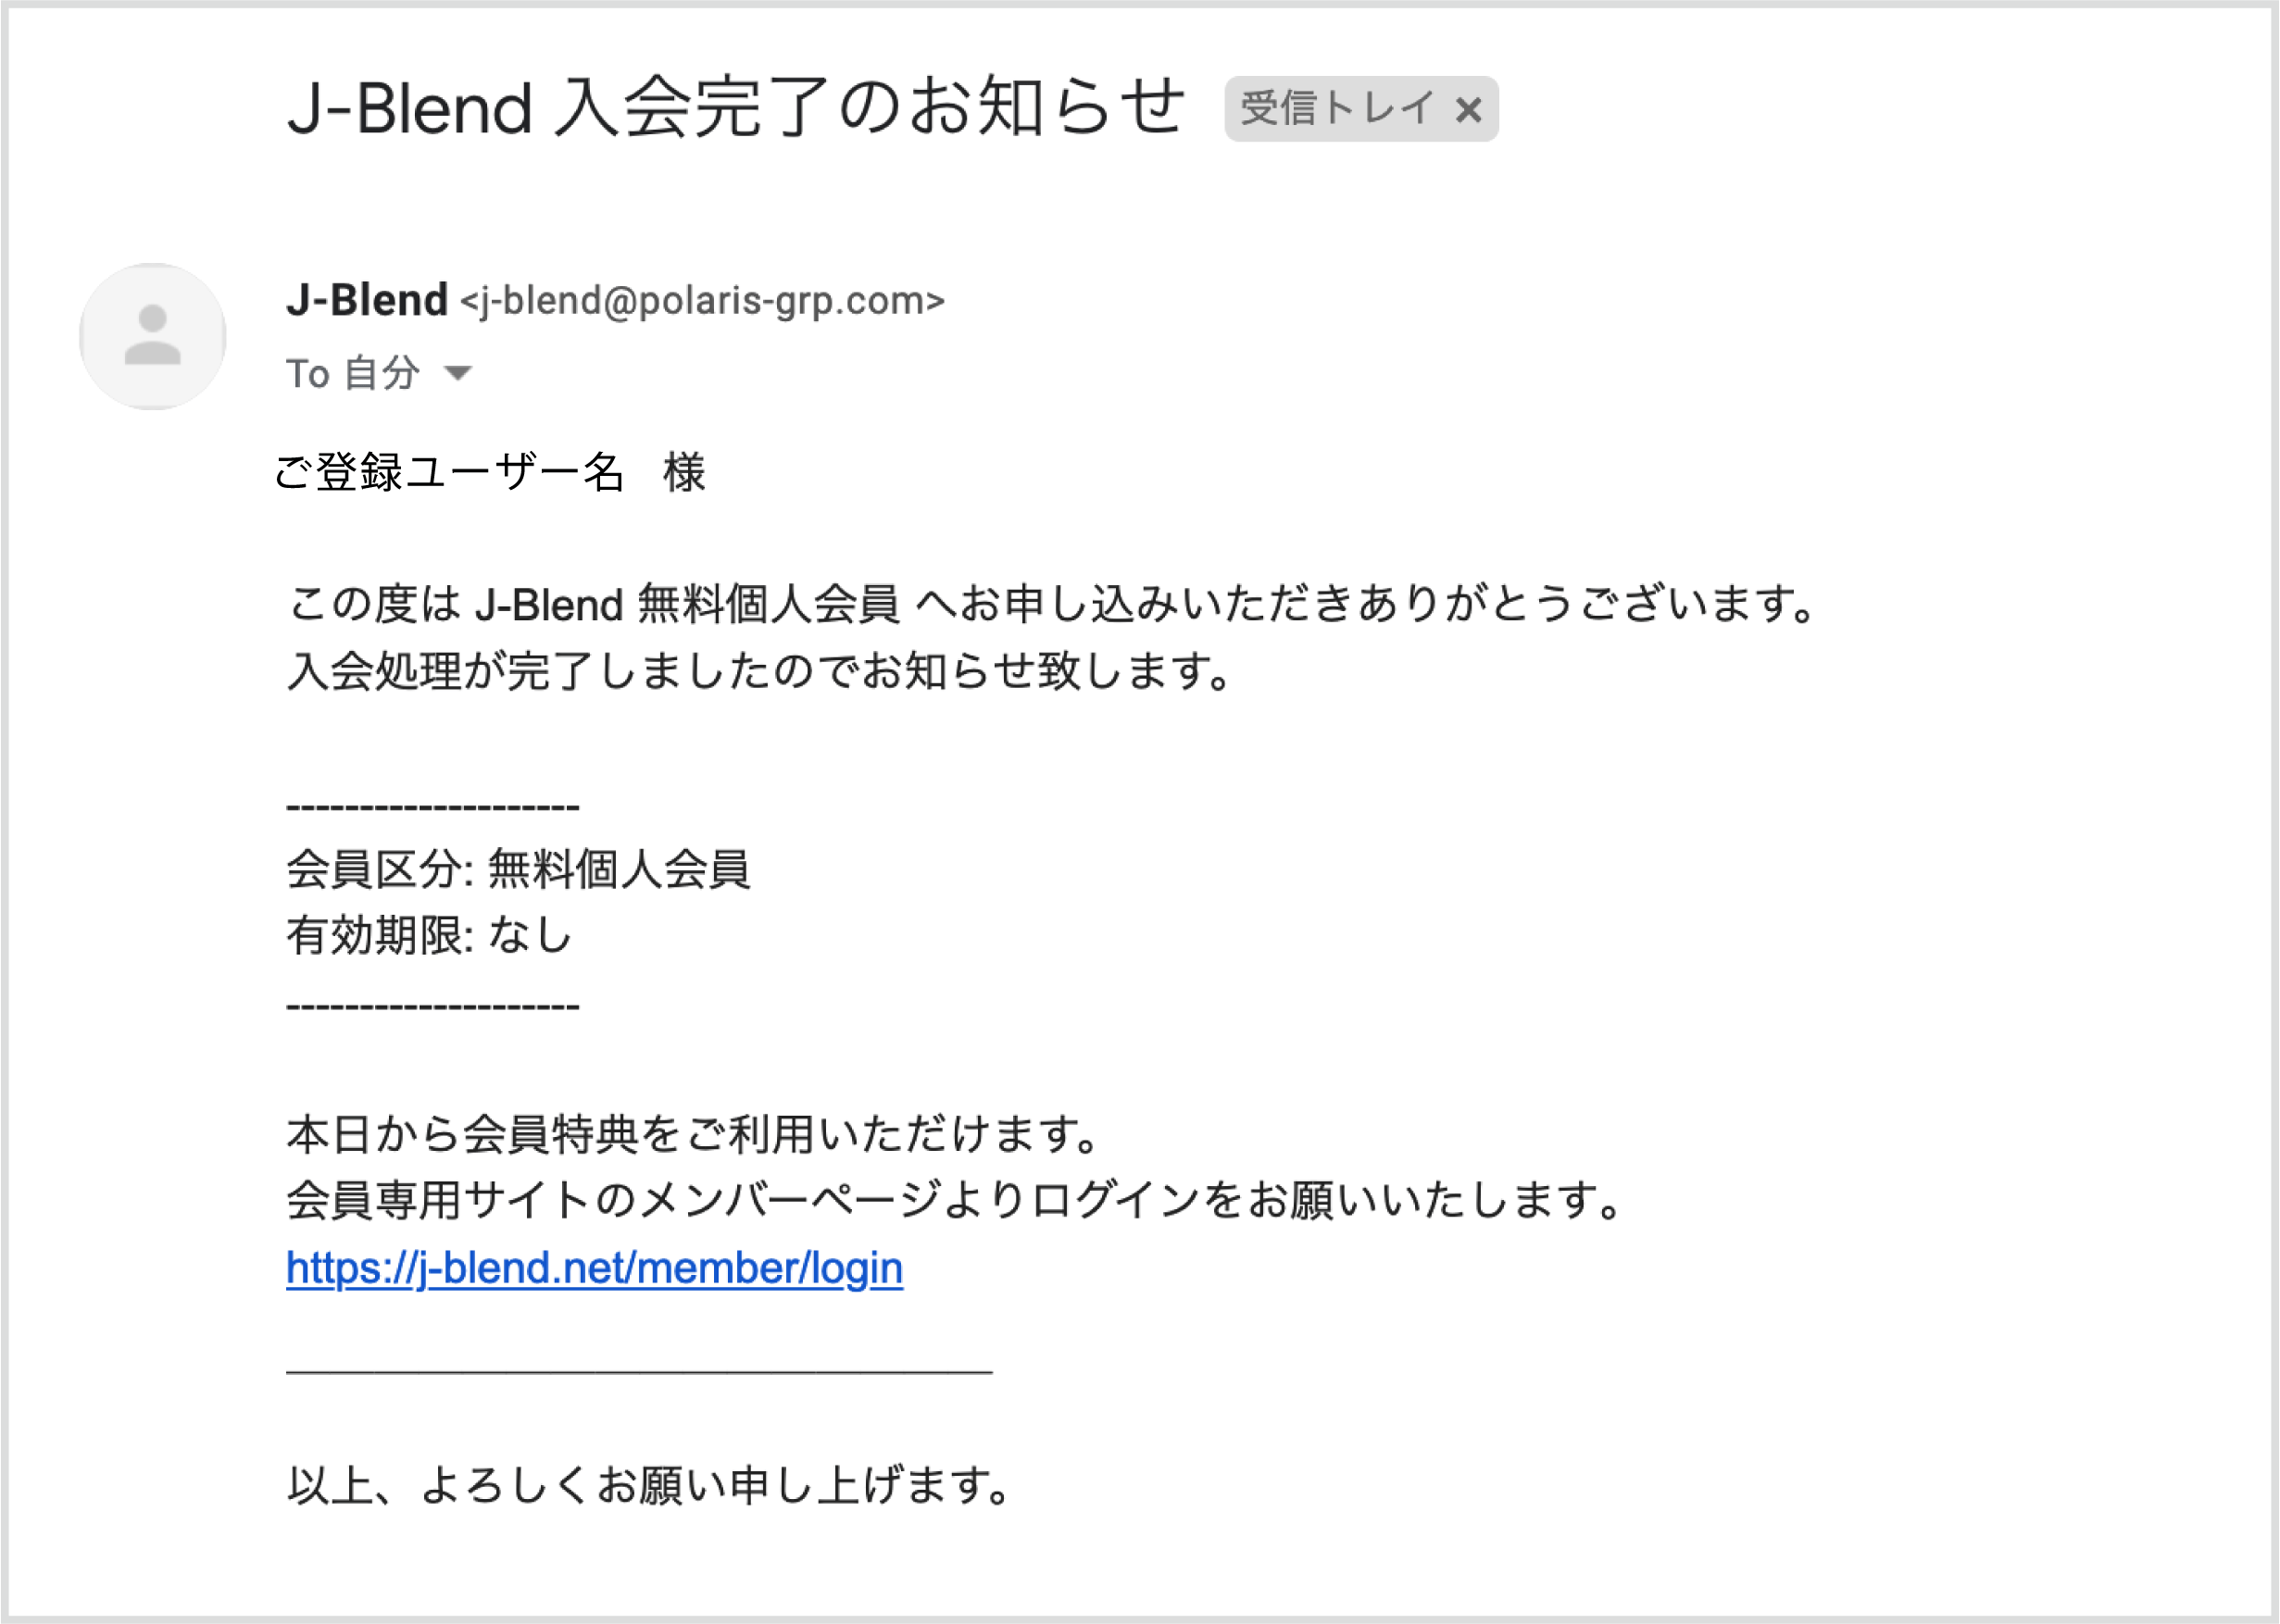 J-Blend入会完了メール